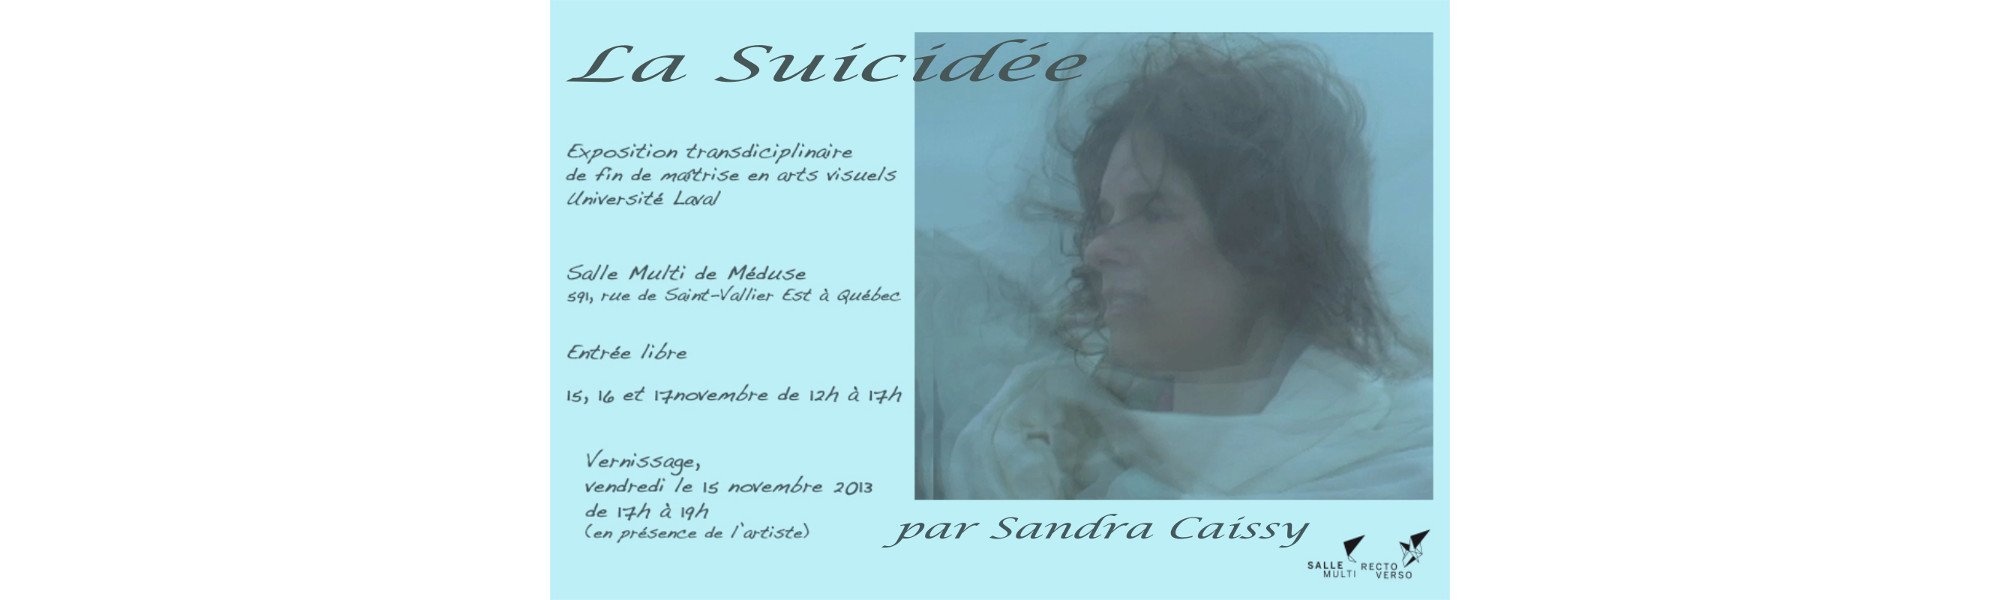 L'art tragique - Affiche exposition maîtrise en arts visuels La suicidée - Sandra Caissy, l'artiste